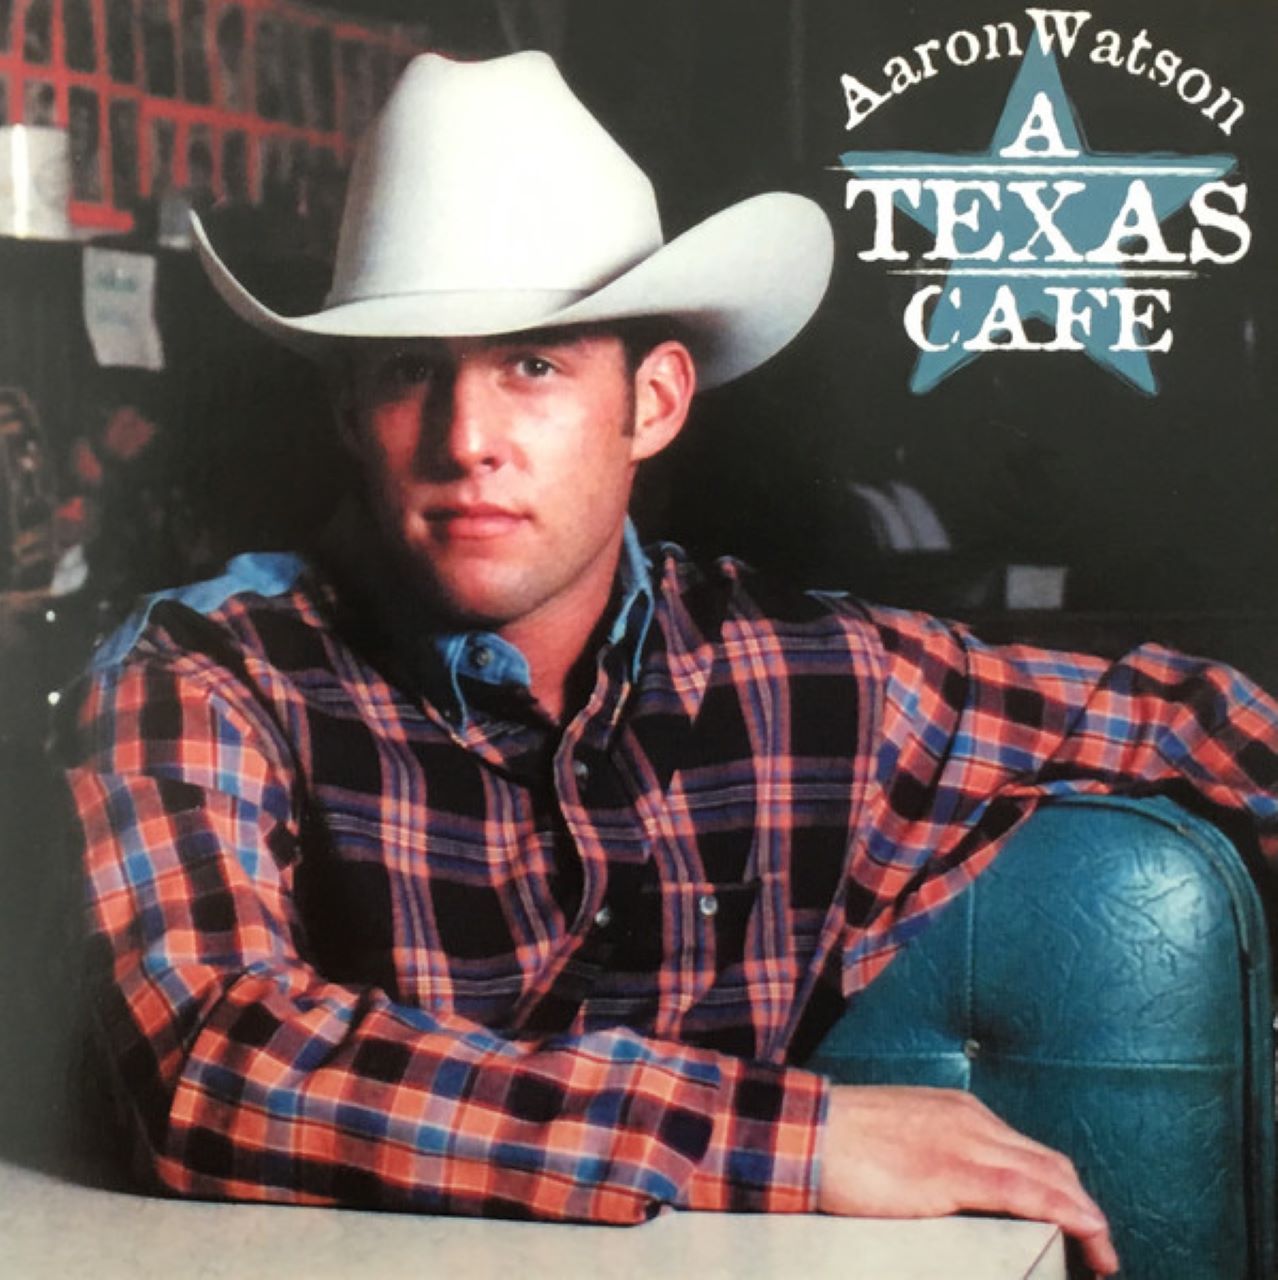 Aaron Watson - A Texas Café cover album